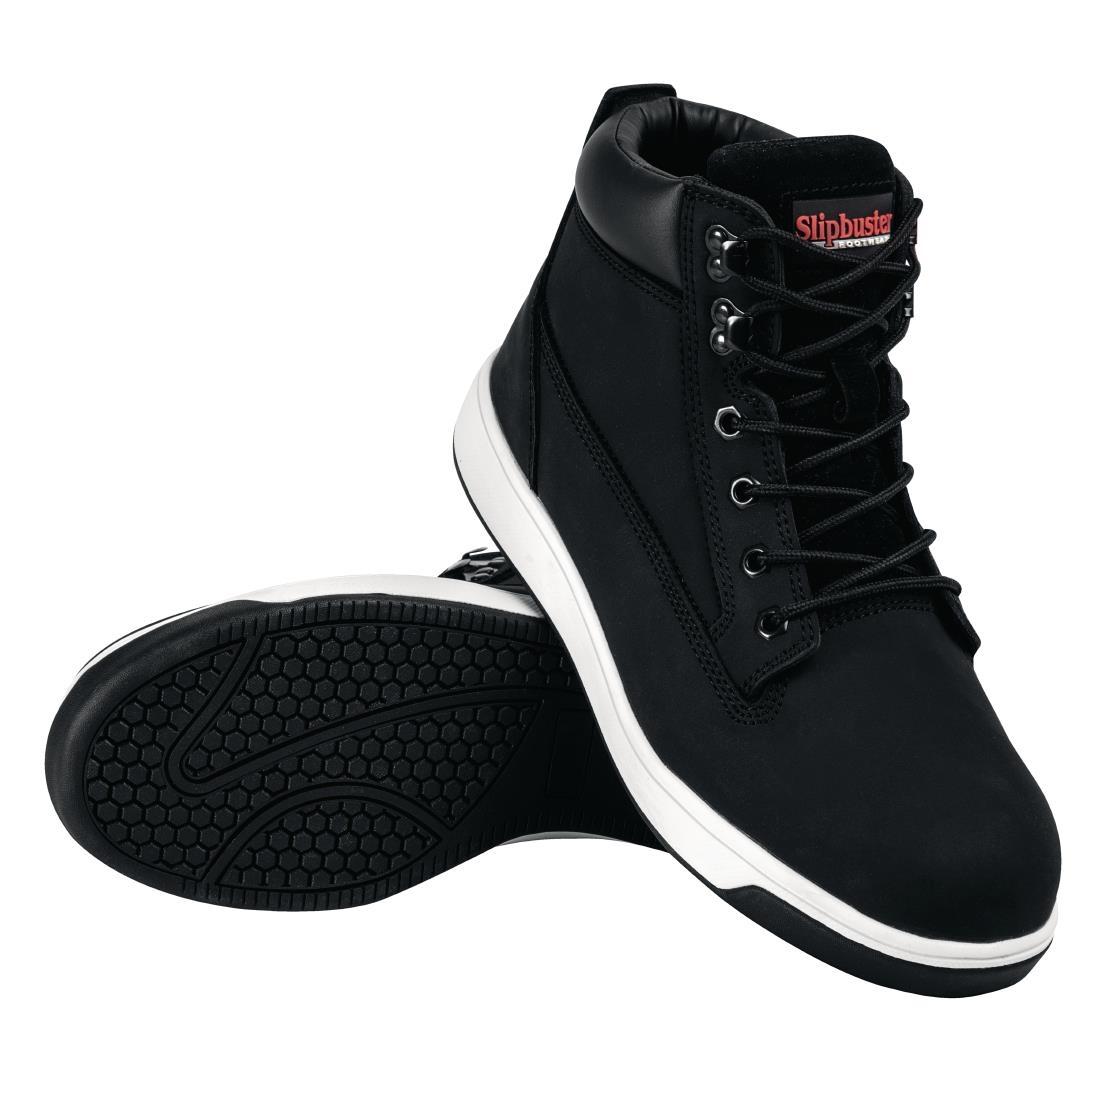 Slipbuster Sneaker Boots Black 46 - BB422-46  - 8